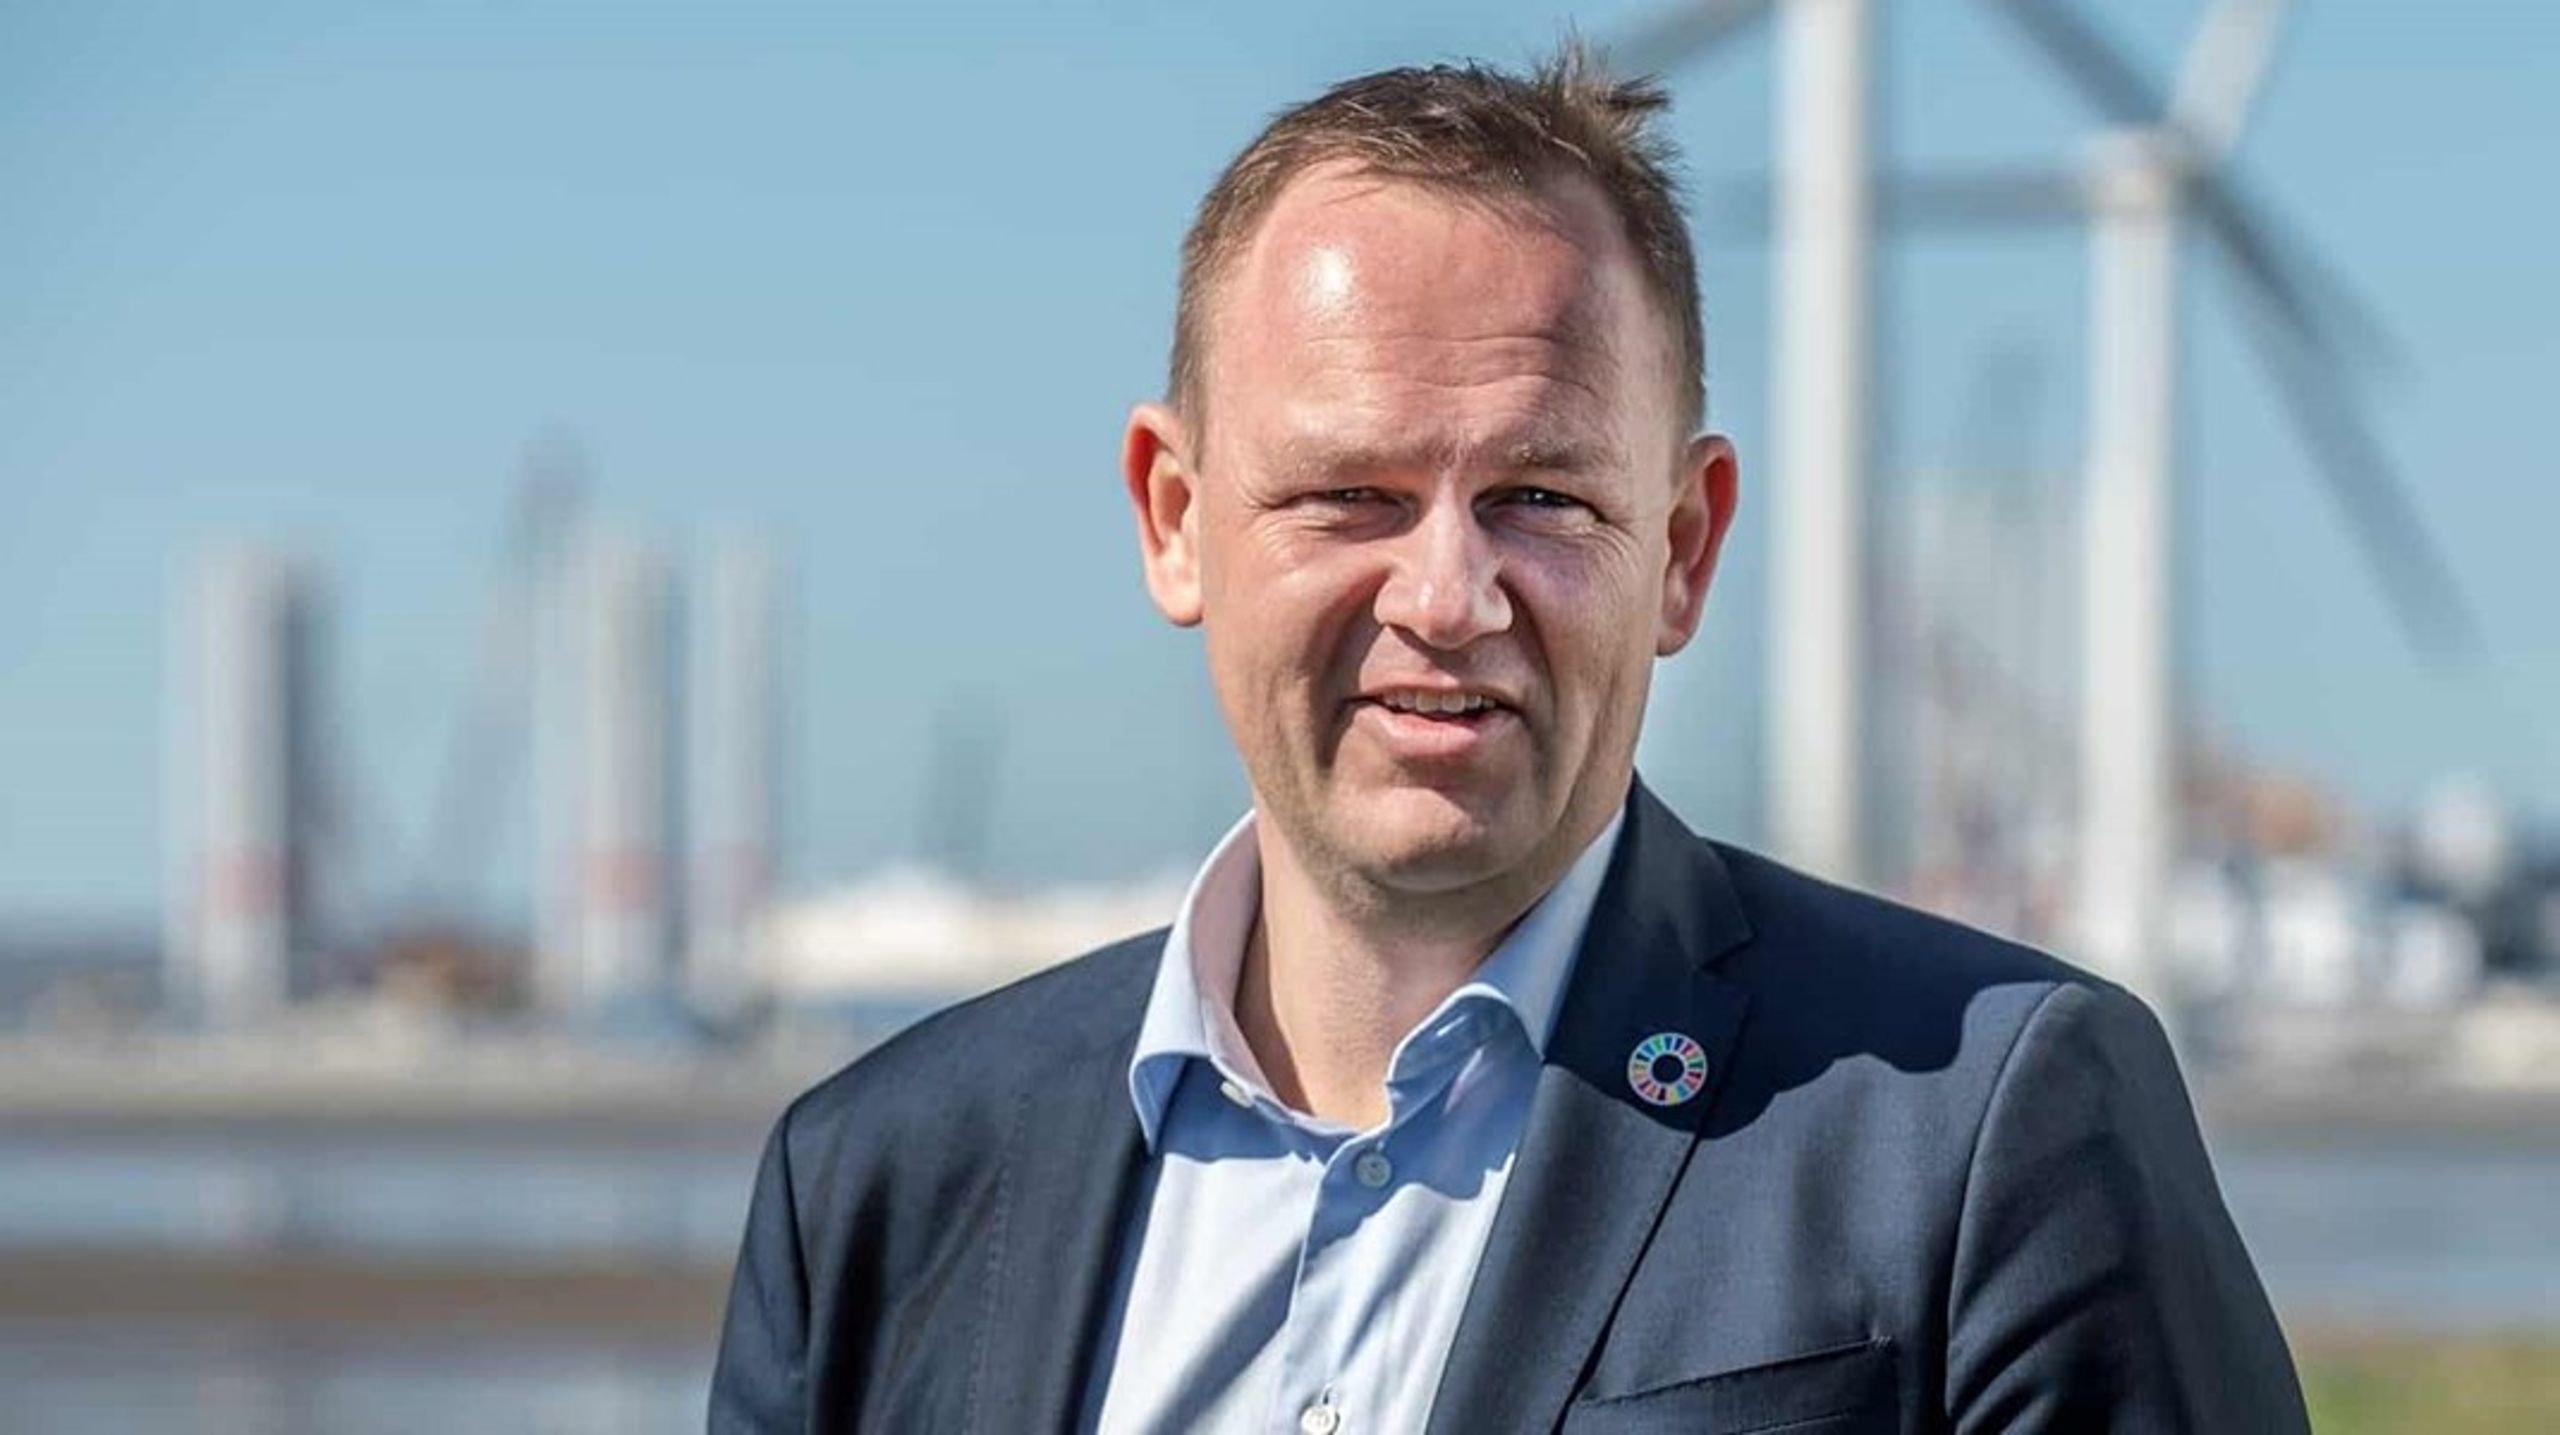 Borgmester i Esbjerg Kommune Jesper Frost Rasmussen er blevet valgt som præsident for en sammenslutning af 19 energibyer fra hele verden.